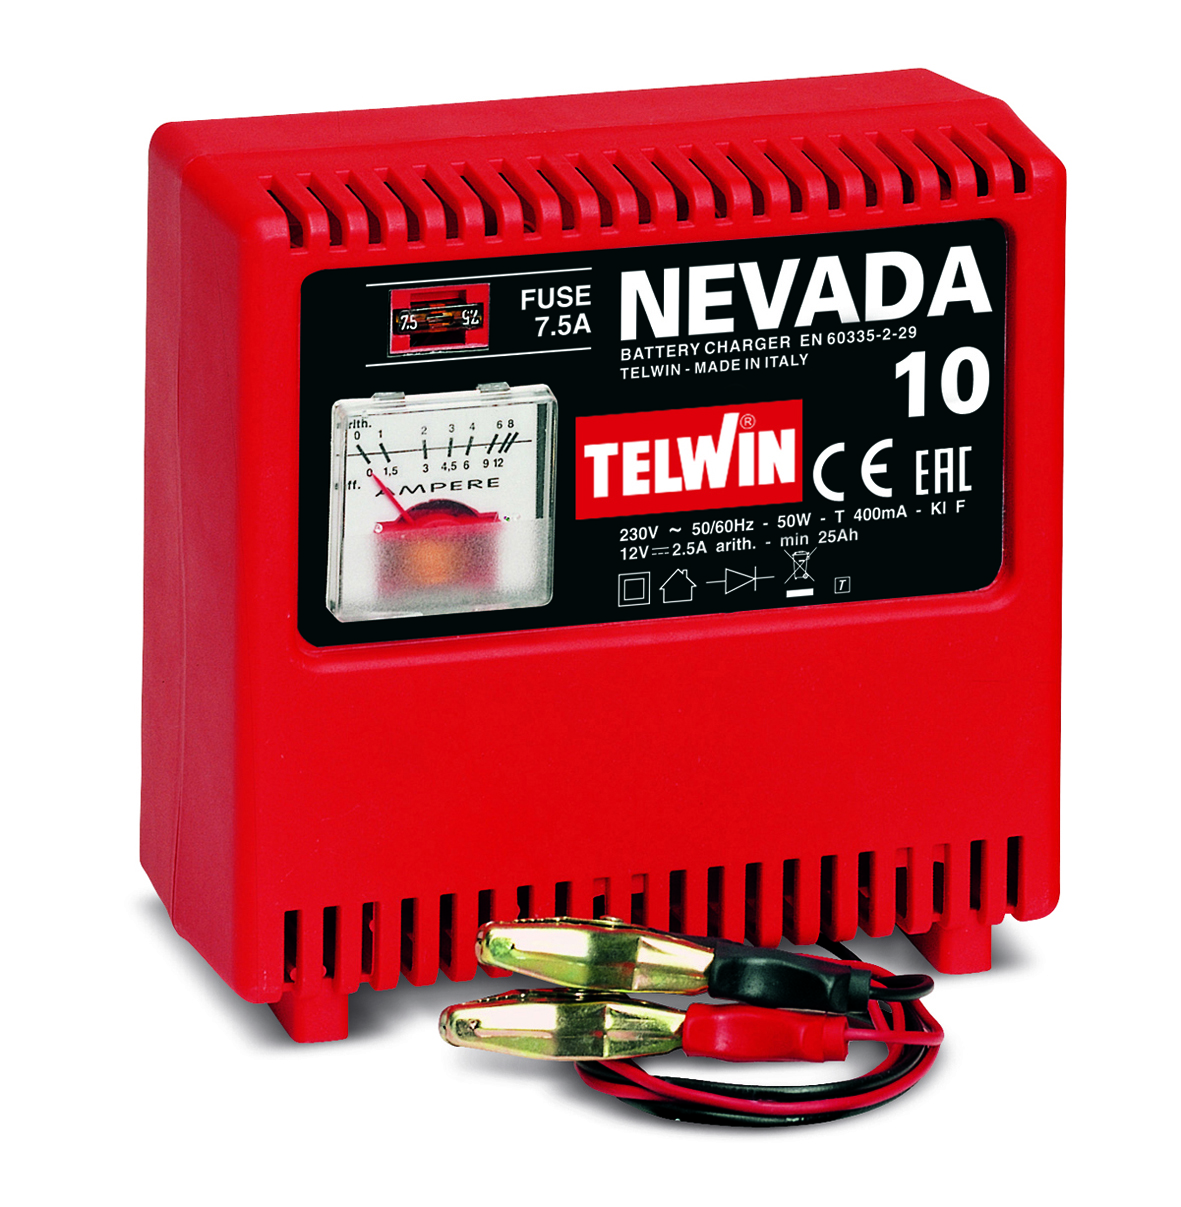 Telwin batterilader Nevada 10 - 12 volt 8107